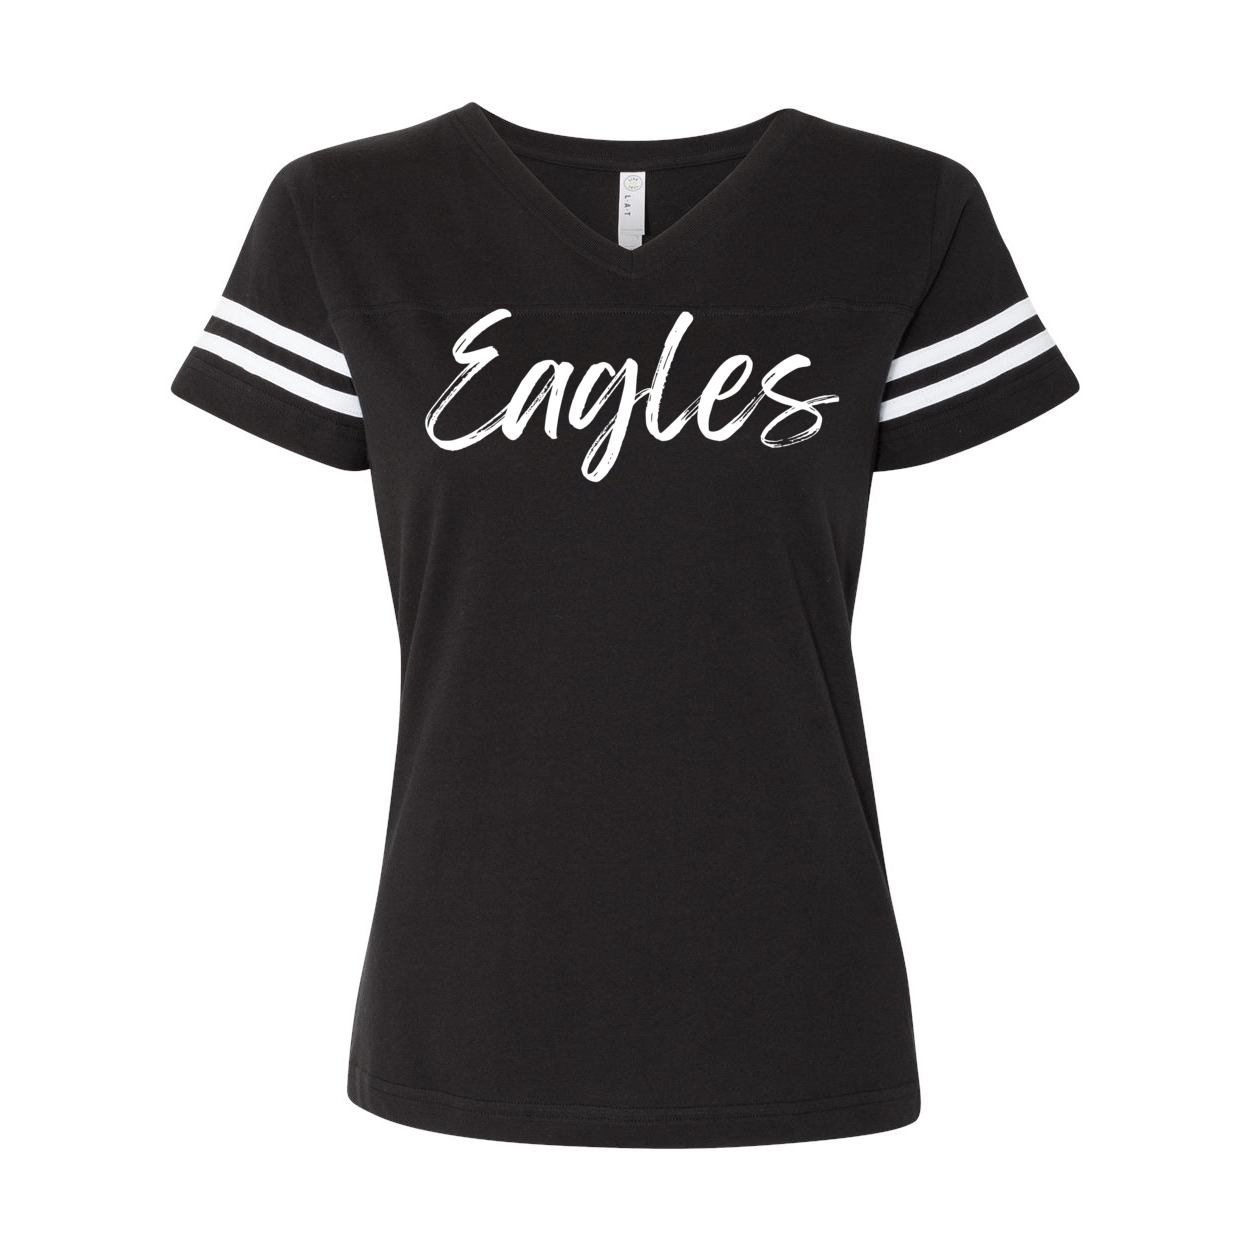 Women's Team Spirit Script Logo Short Sleeve Graphic Football Ringer Tee - New Albany Eagles